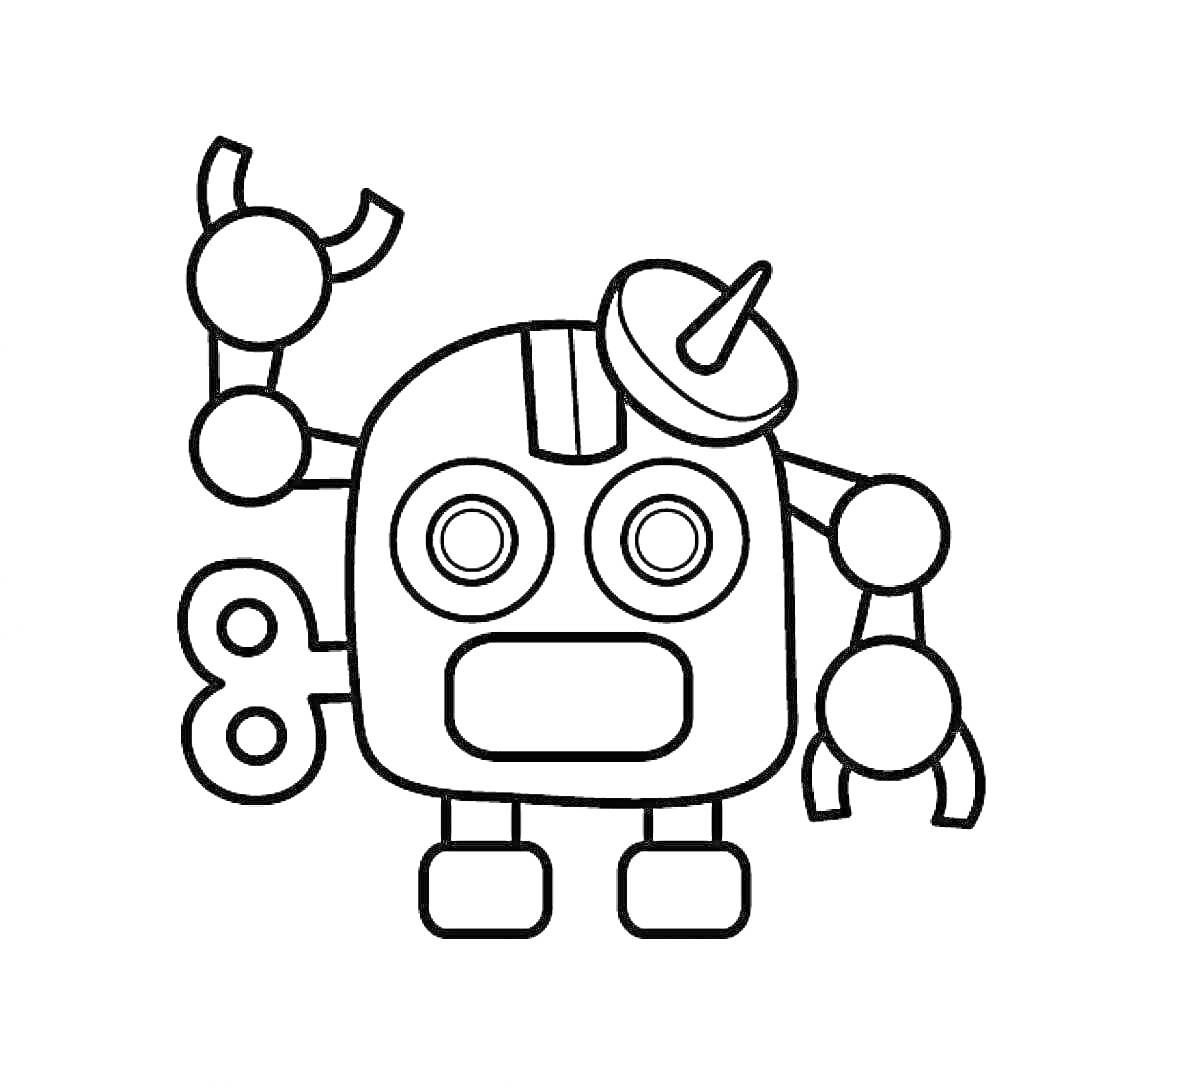 Раскраска Веселый робот с антеннами, рычагами и заводным механизмом